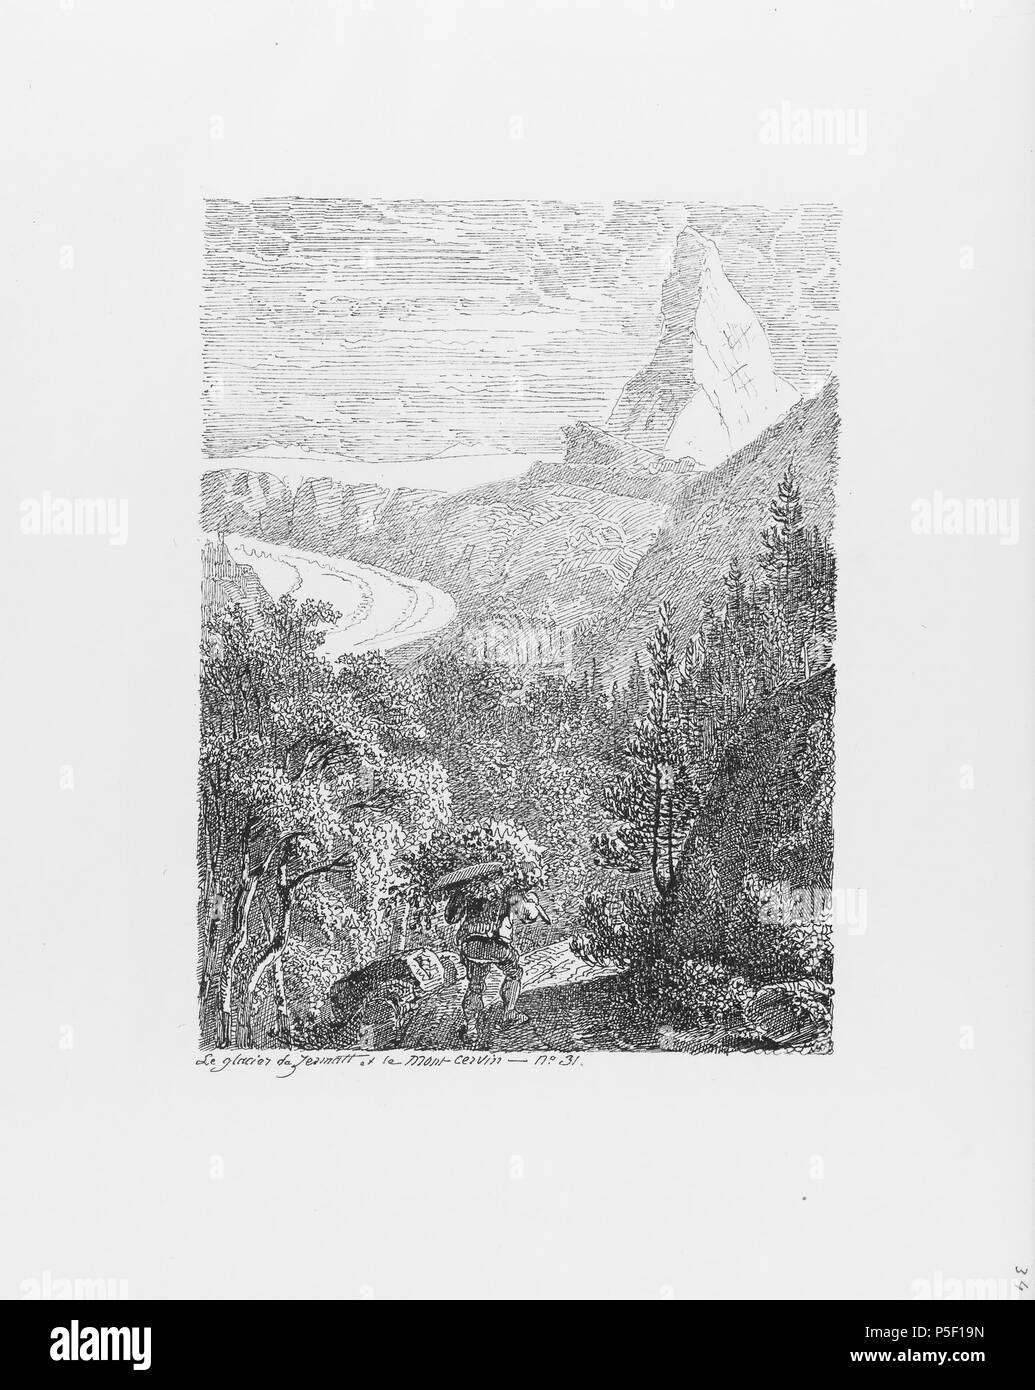 322 CH-NB-Voyage autour du Mont-Blanc dans les vallées d'Hérens de Zermatt et au Grimsel 1843-nbdig-19161-033 Stock Photo